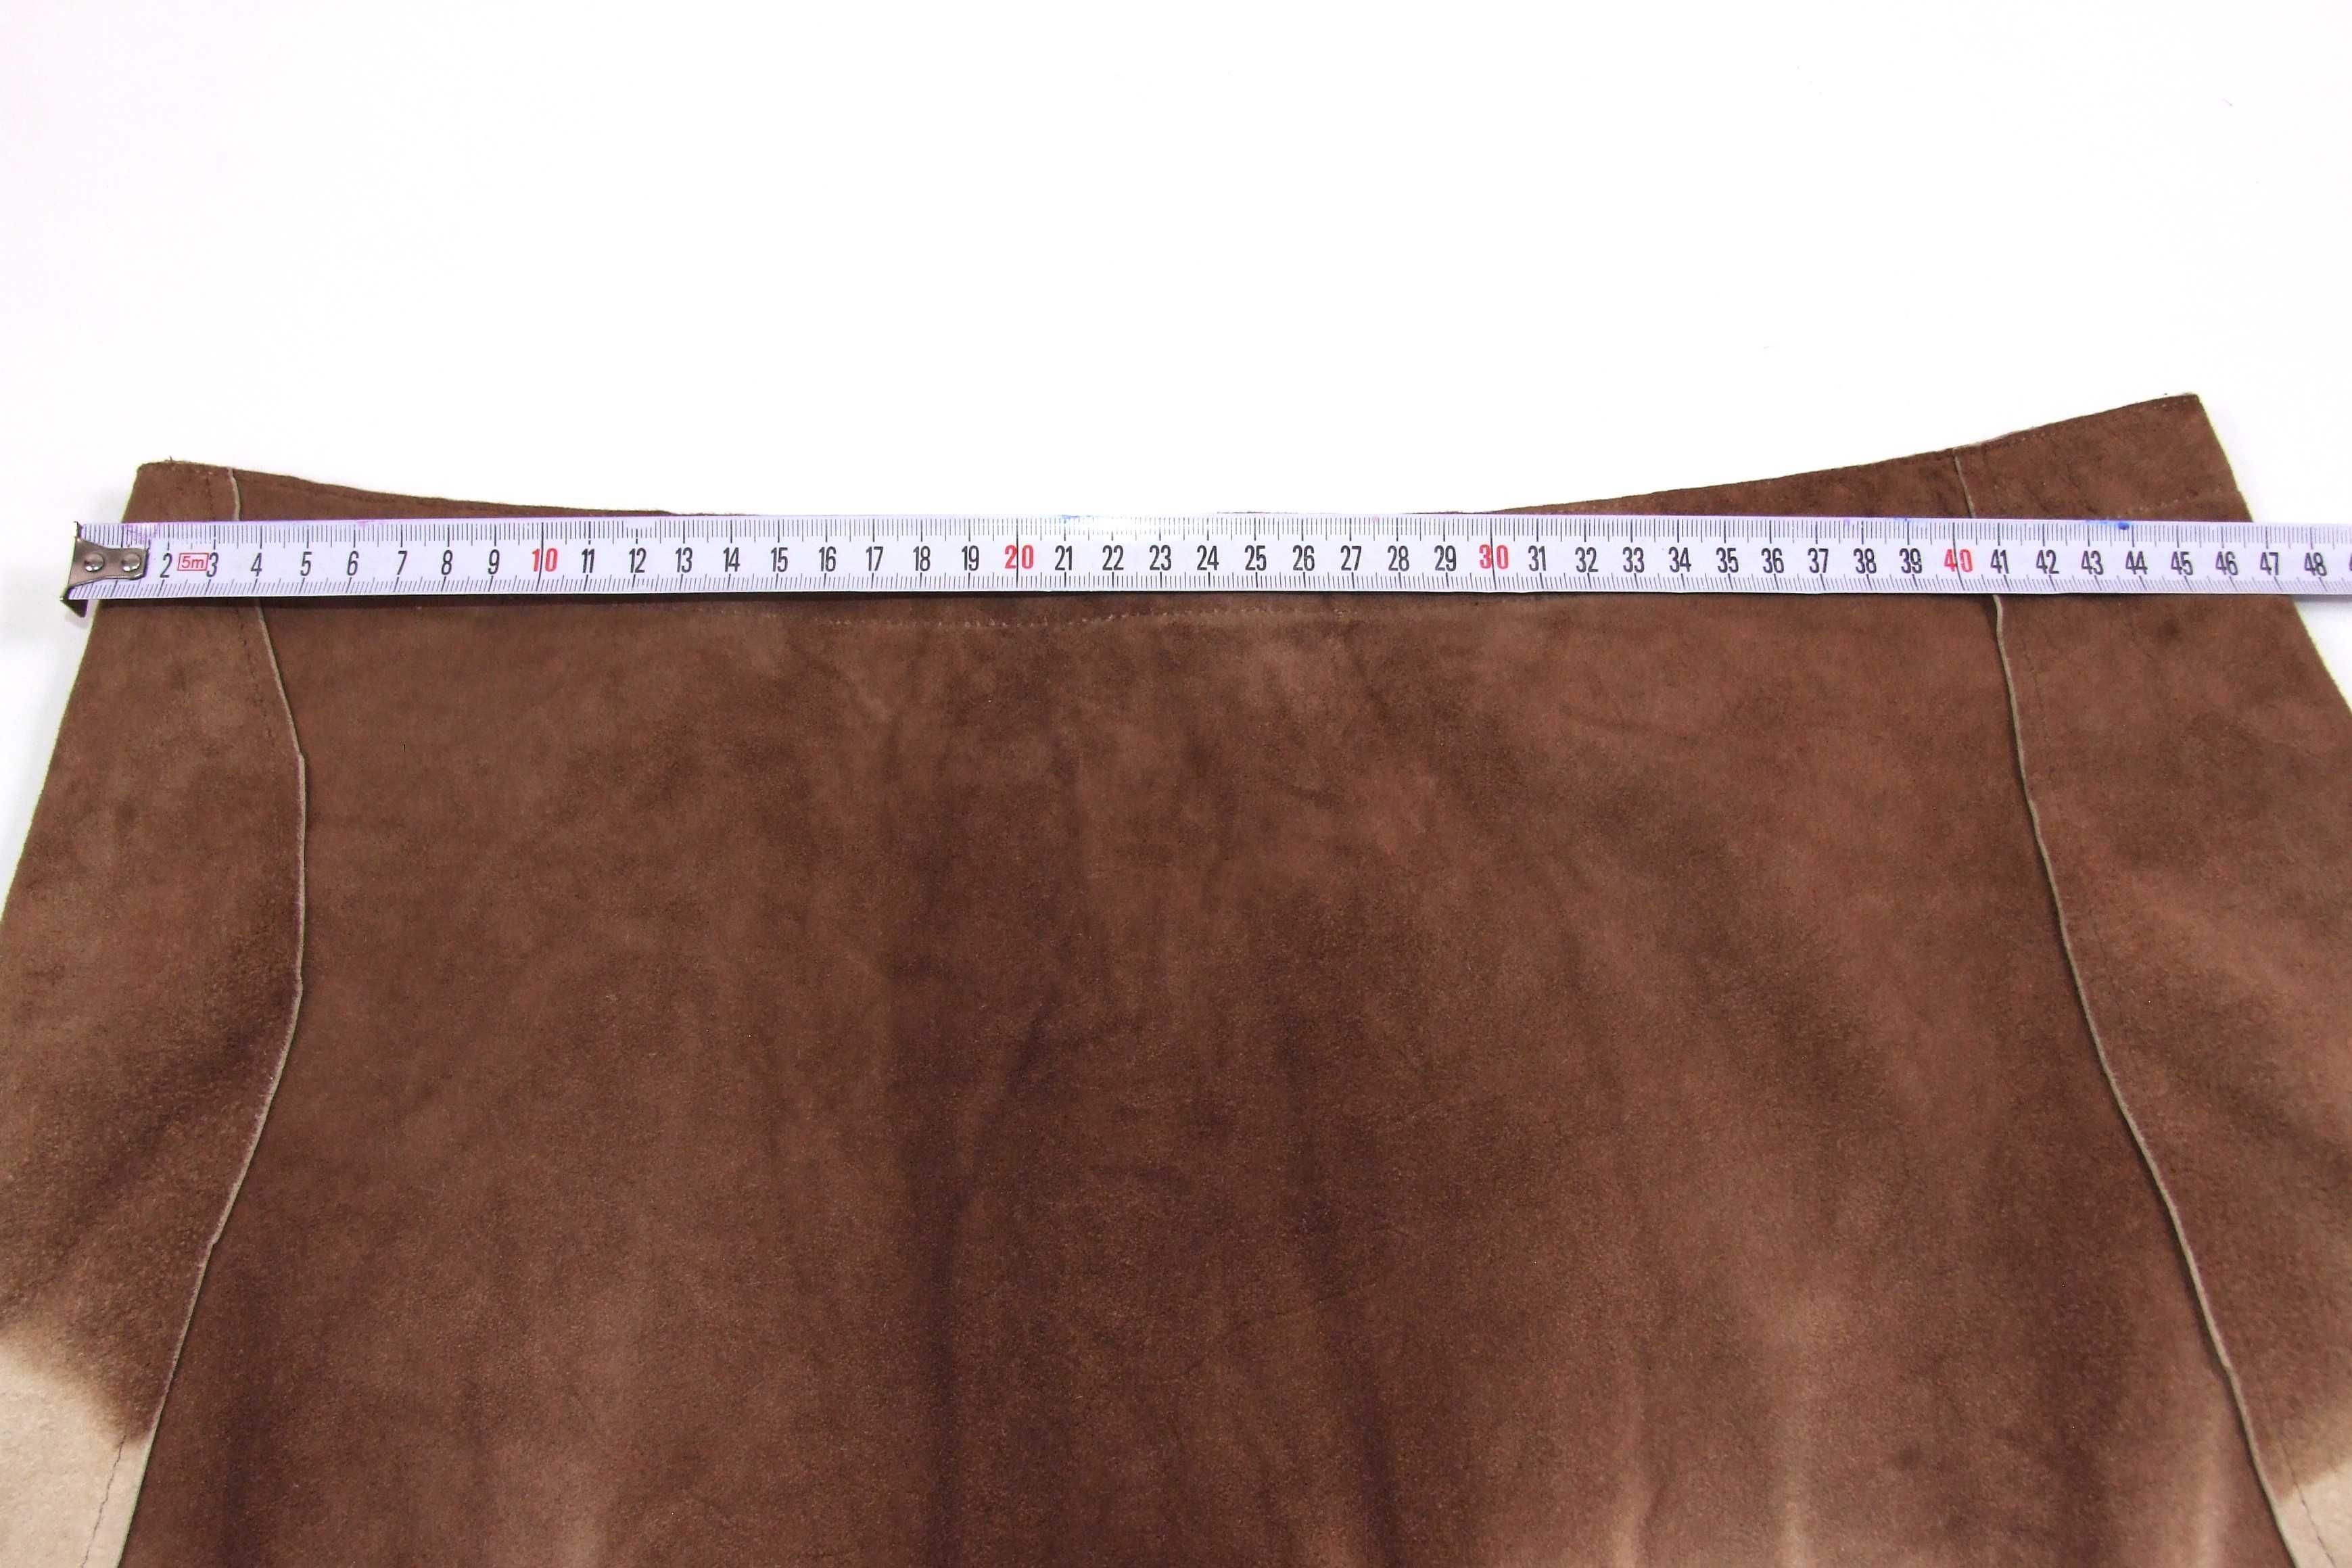 Fusta piele naturala caprioara, masura 46-48, Made in India, NOUA